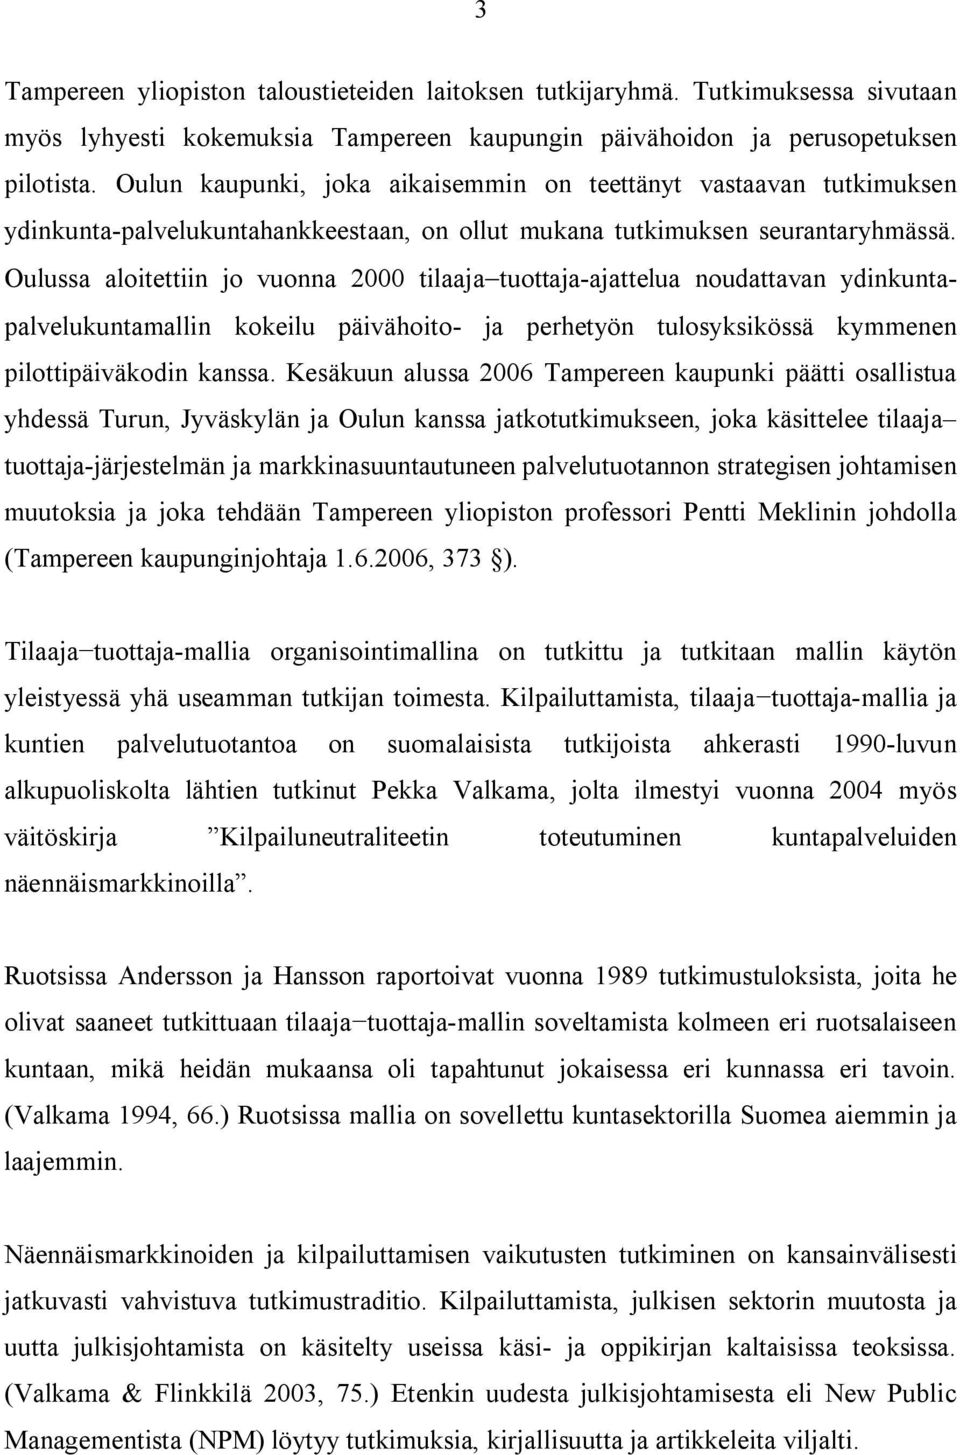 Oulussa aloitettiin jo vuonna 2000 tilaaja tuottaja ajattelua noudattavan ydinkuntapalvelukuntamallin kokeilu päivähoito ja perhetyön tulosyksikössä kymmenen pilottipäiväkodin kanssa.